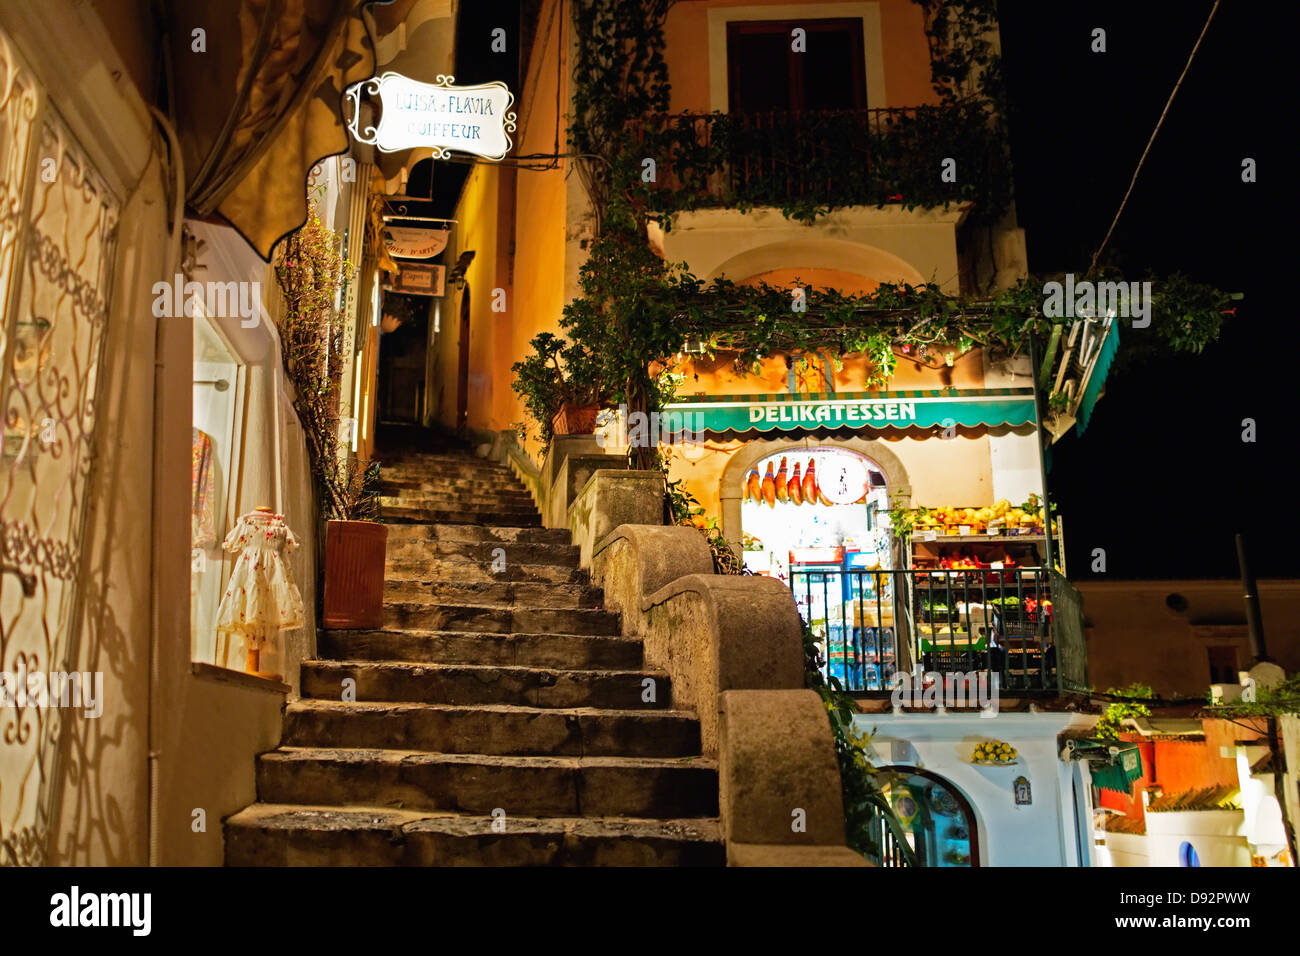 Marché alimentaire de nuit dans une rue étroite, Positano, Campanie, Italie Banque D'Images